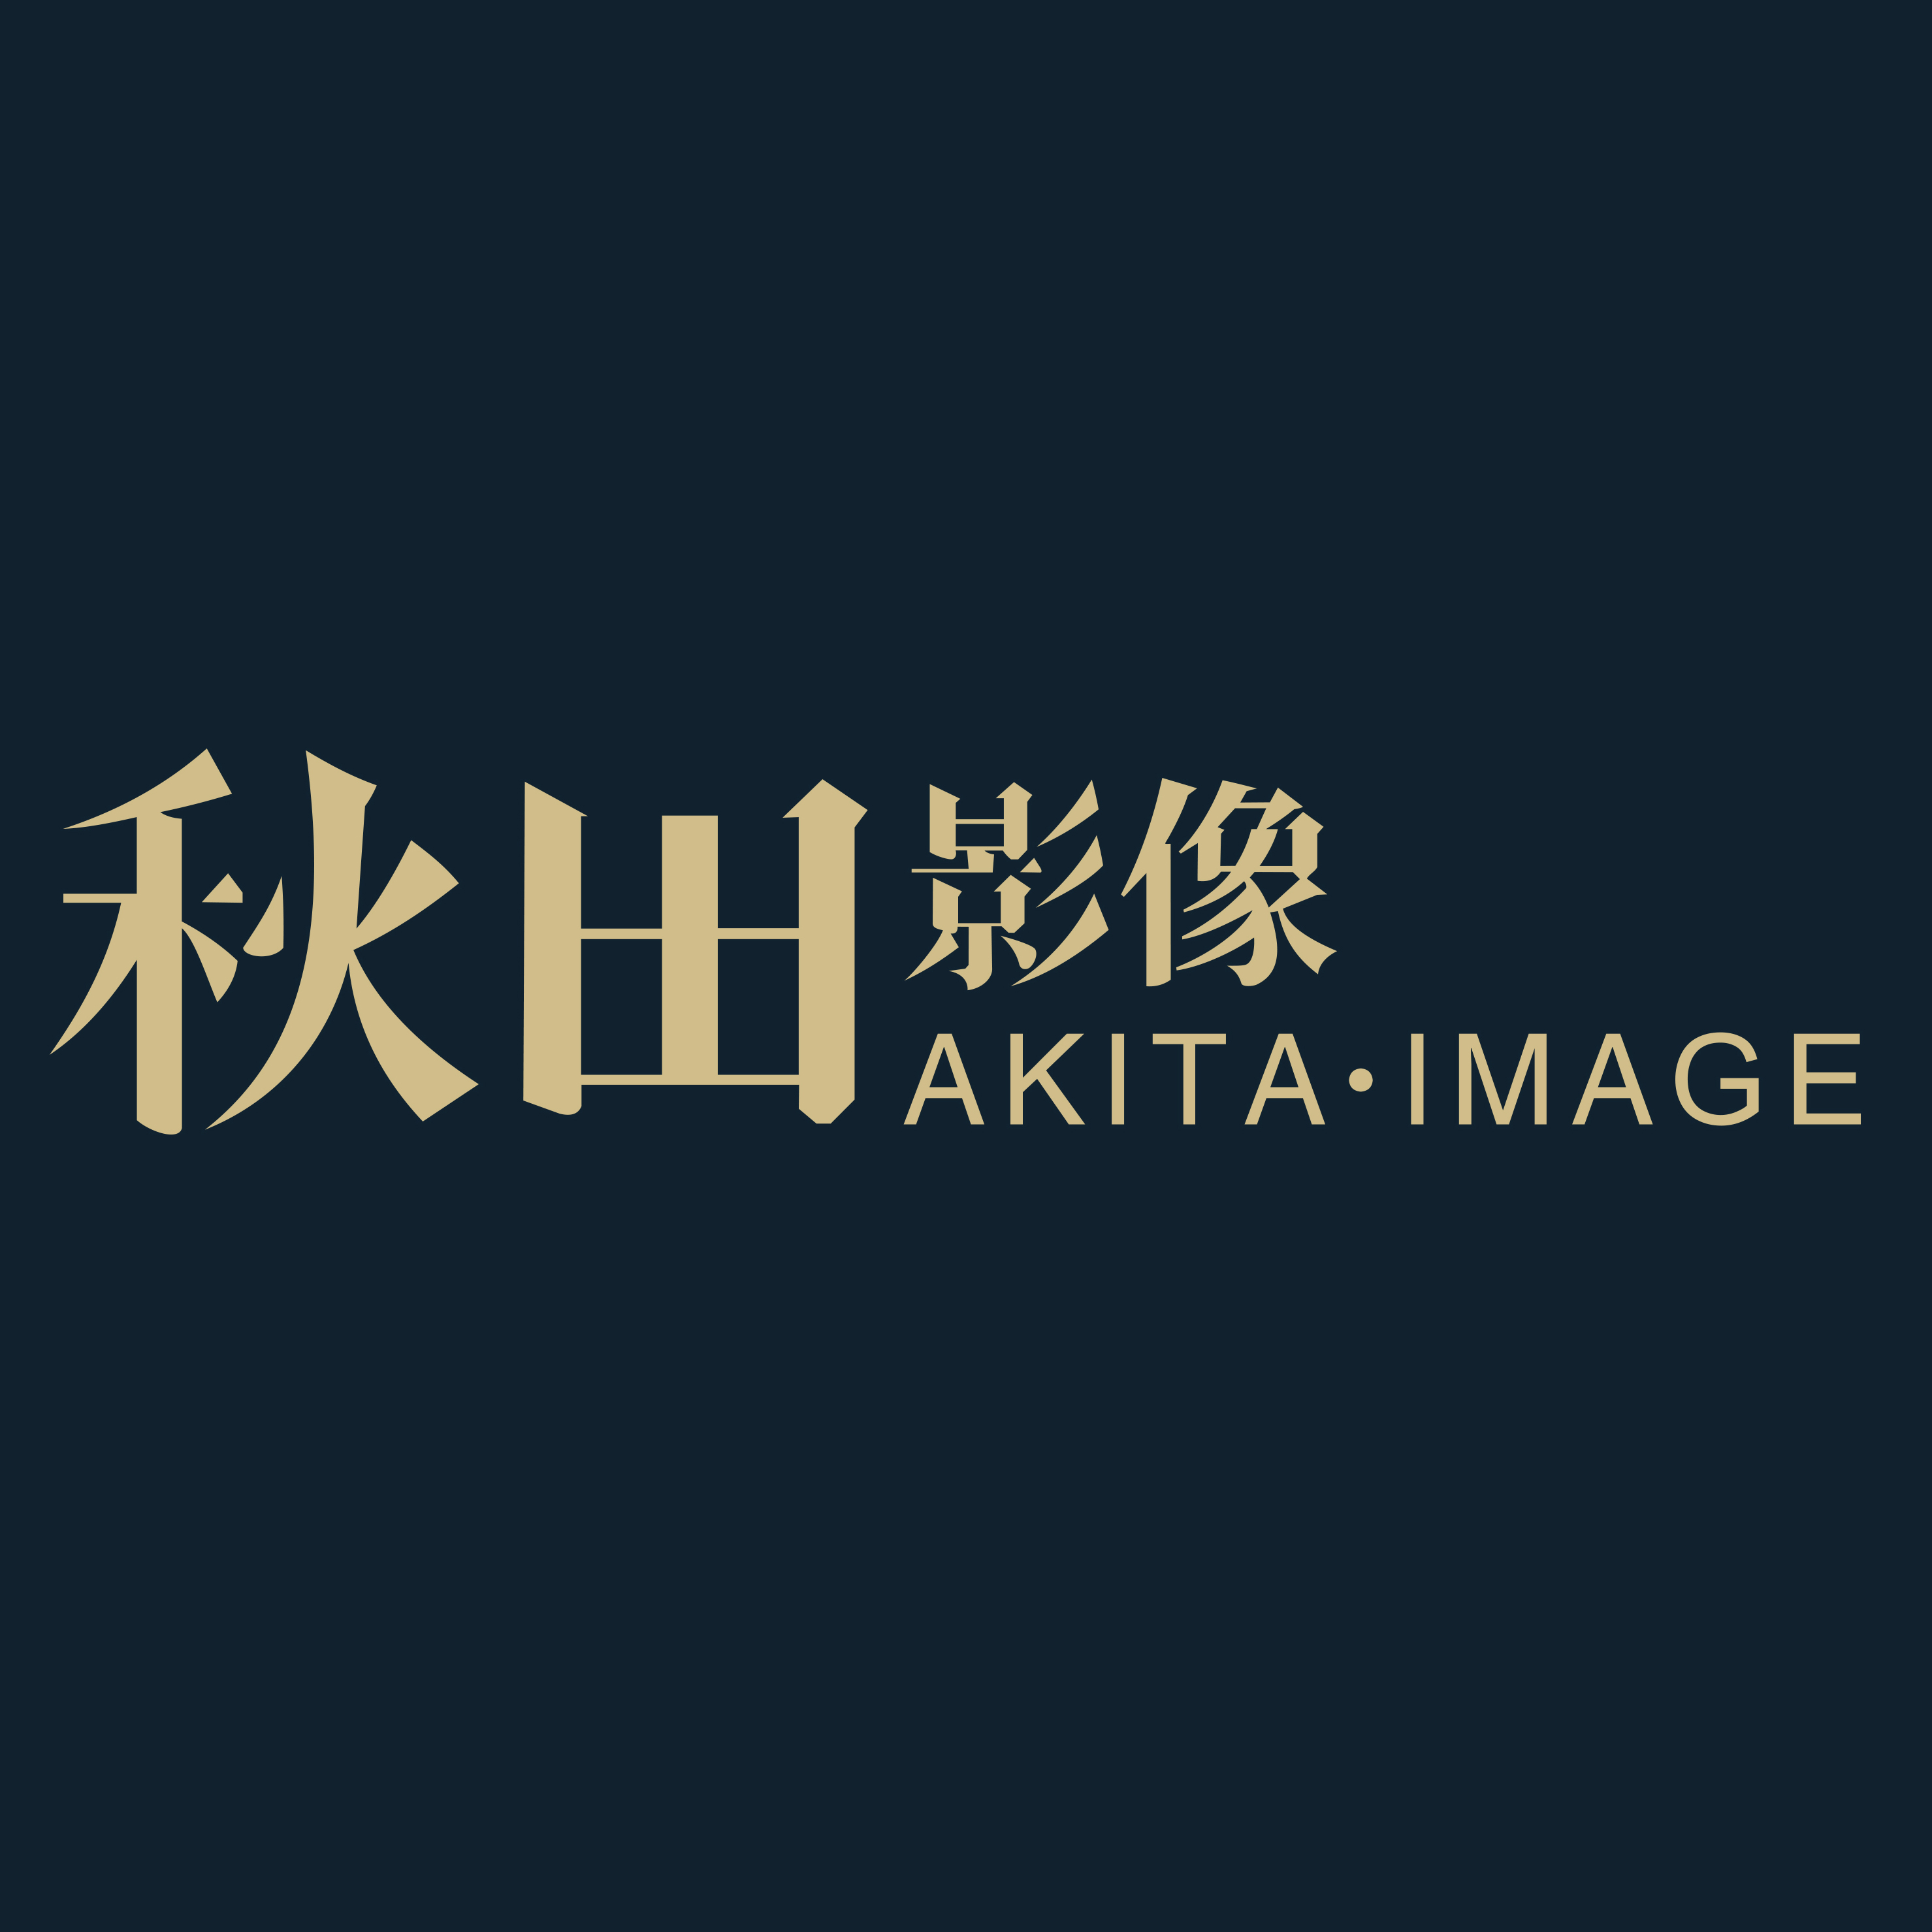 廣州秋田影像婚紗攝影工作室